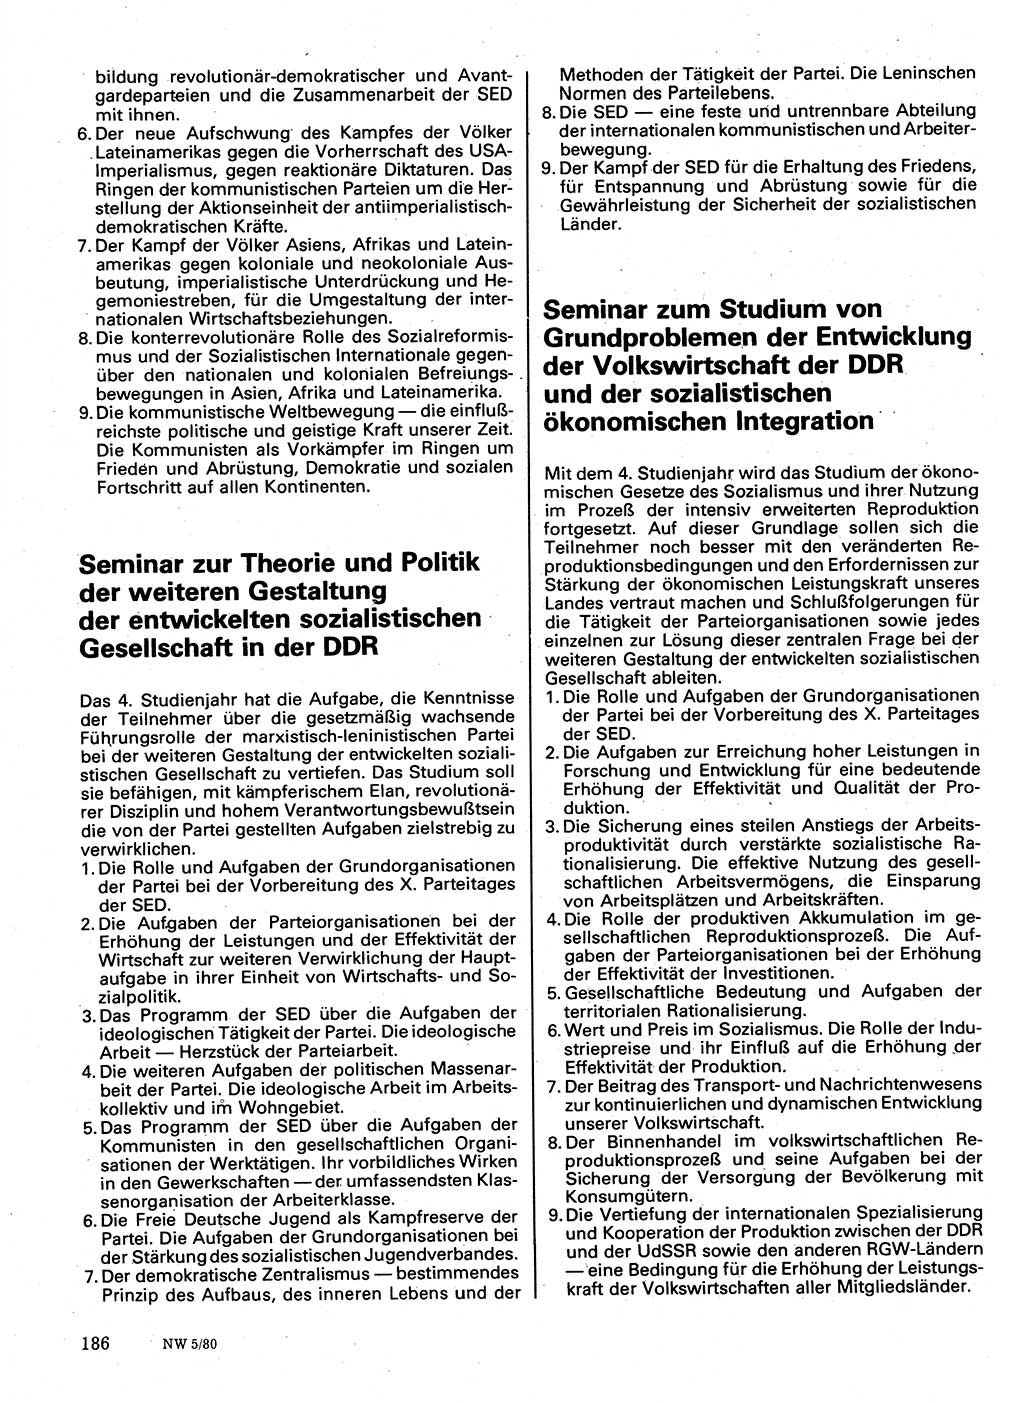 Neuer Weg (NW), Organ des Zentralkomitees (ZK) der SED (Sozialistische Einheitspartei Deutschlands) für Fragen des Parteilebens, 35. Jahrgang [Deutsche Demokratische Republik (DDR)] 1980, Seite 186 (NW ZK SED DDR 1980, S. 186)